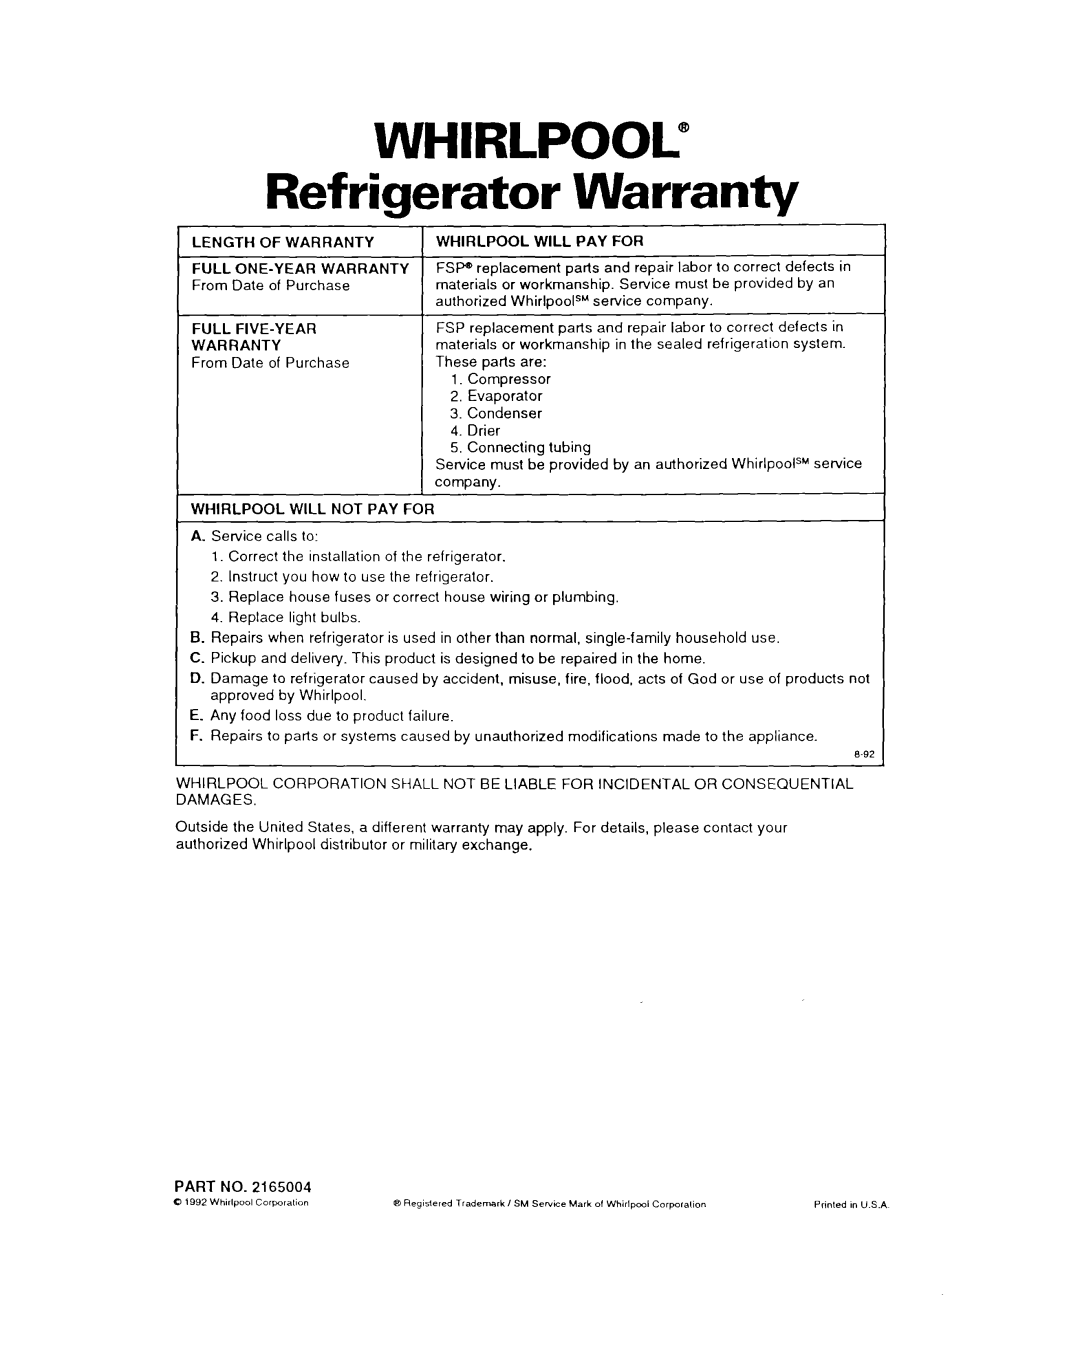 Whirlpool 3ET22DK WHIRLPOOL@ Refrigerator Warranty, Length Of Warranty Full One-Yearwarranty, Full Five-Year Warranty 